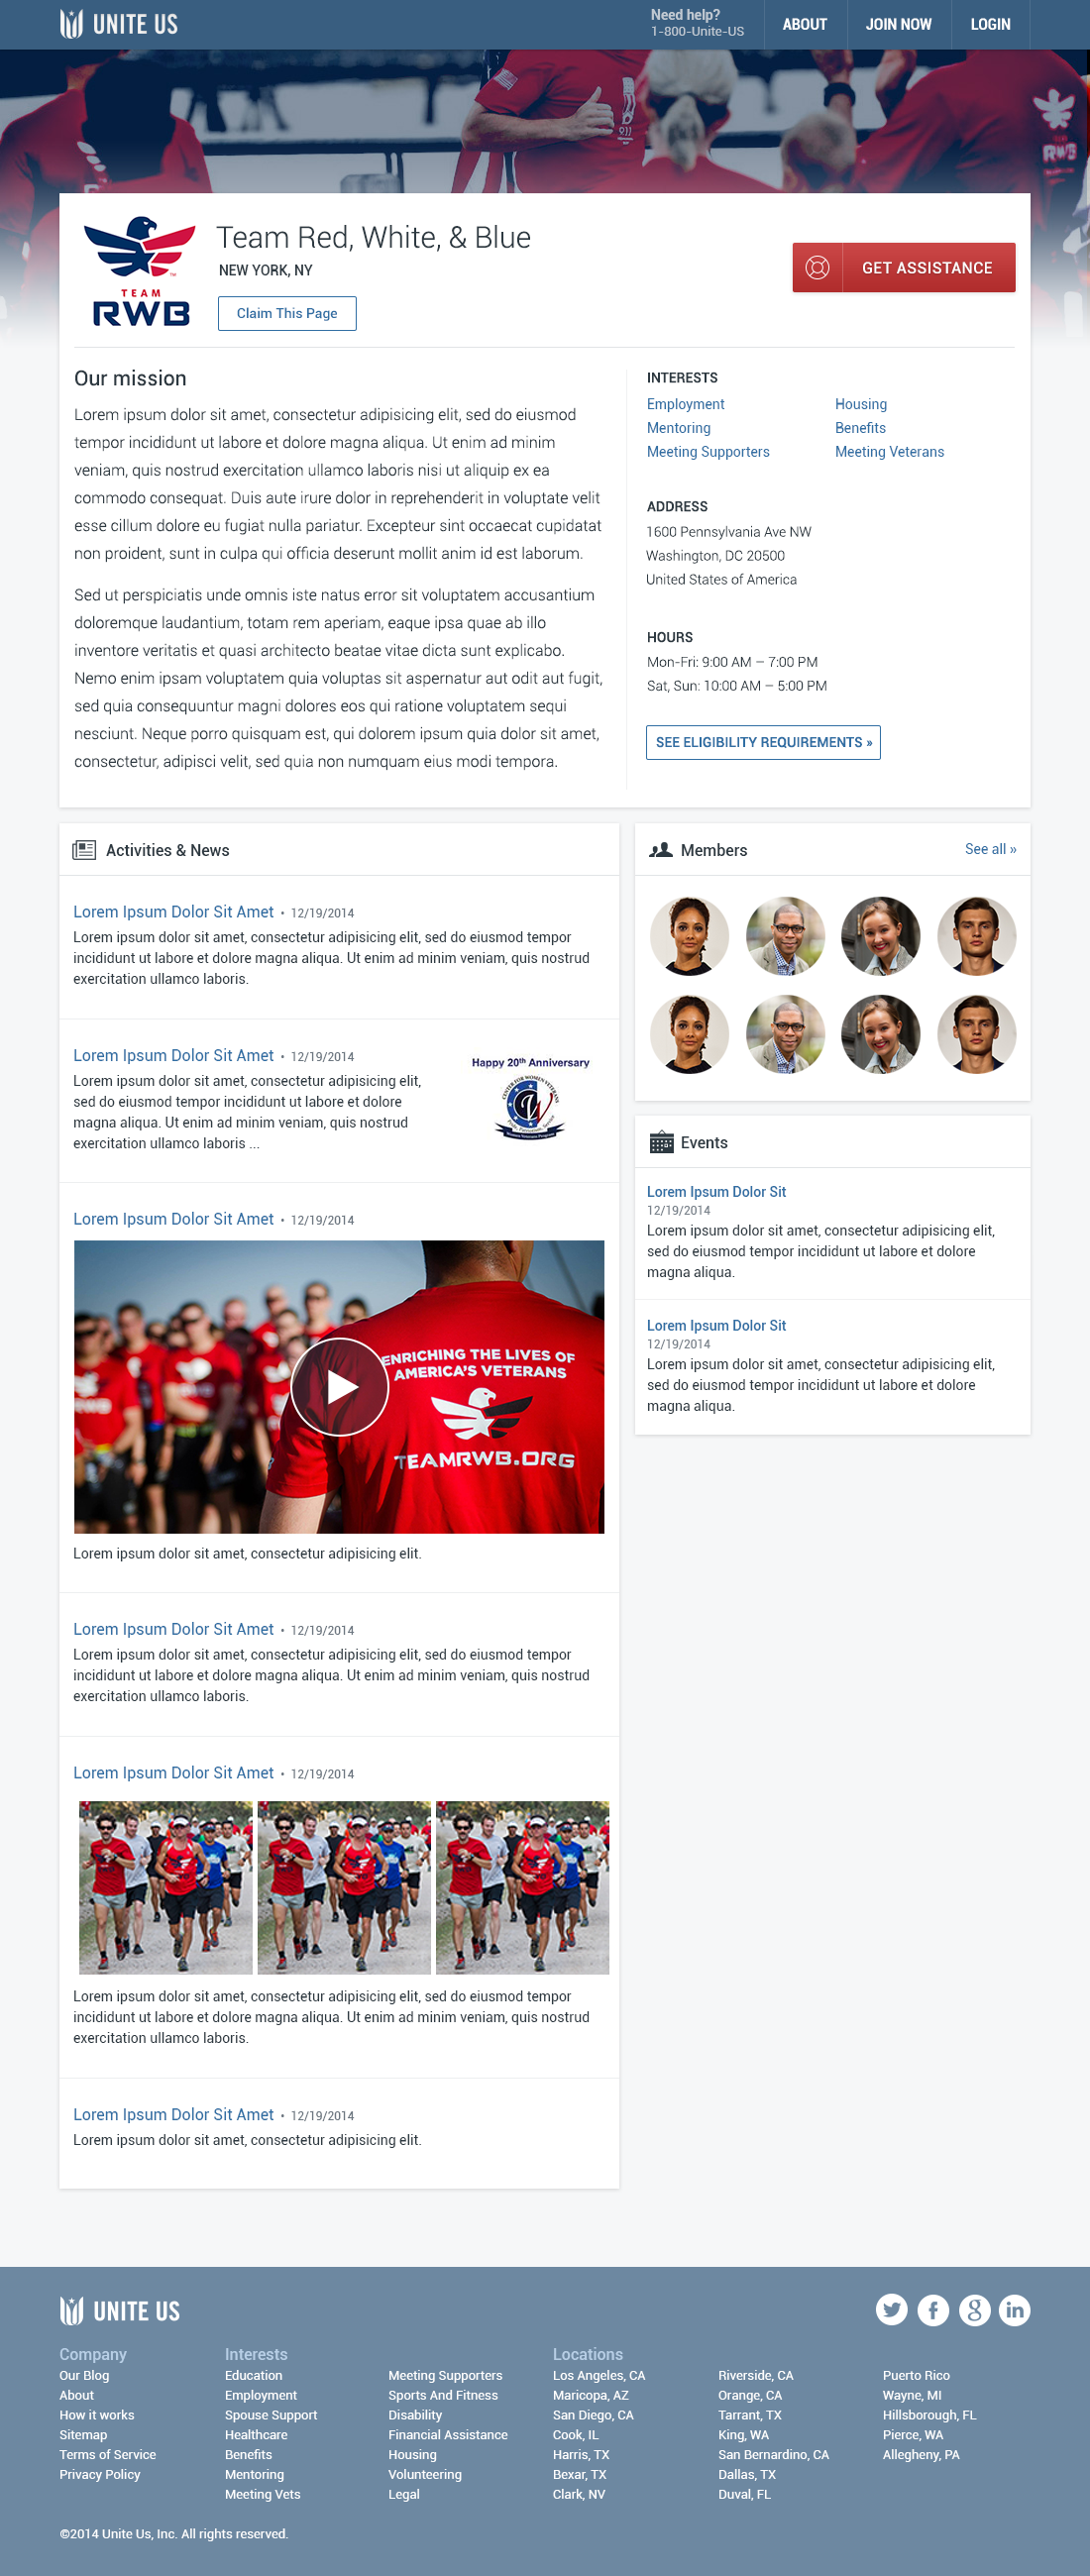 Organization Profile Page